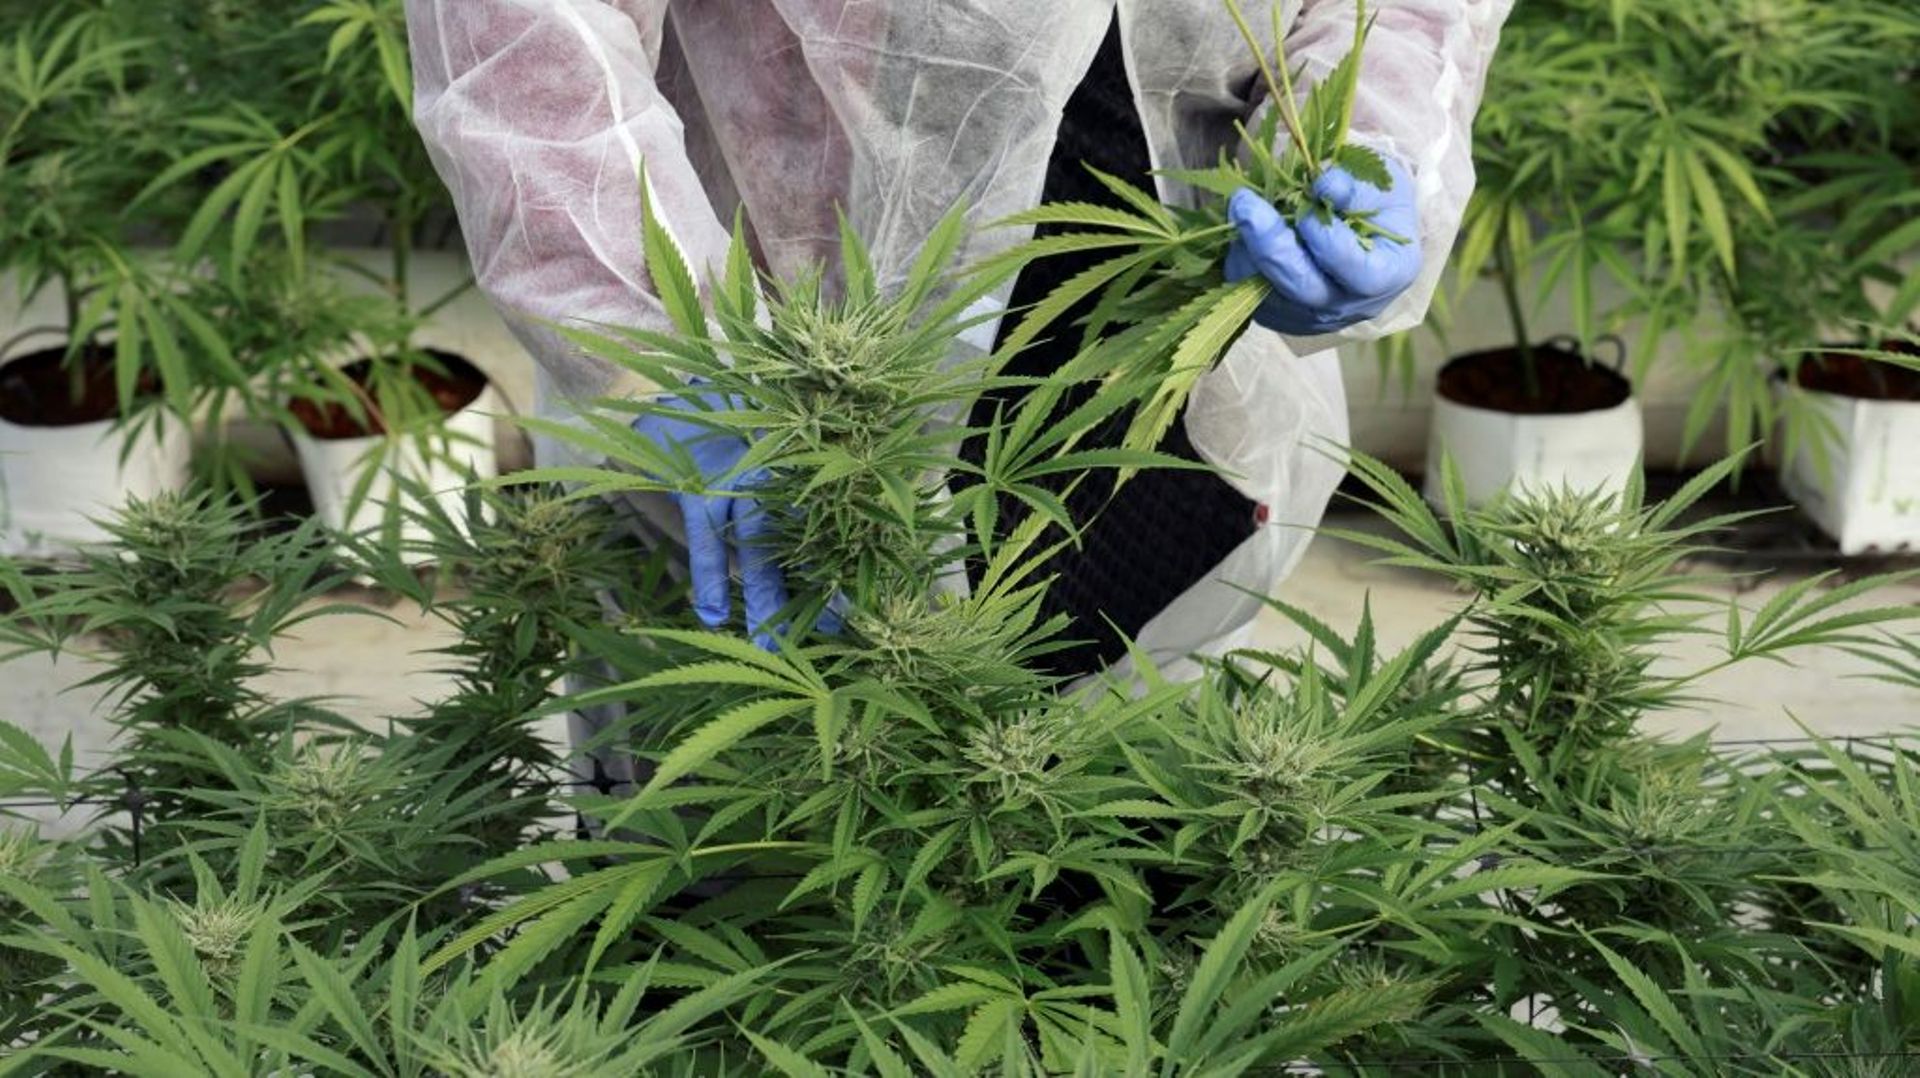 Un employé inspecte des plants de cannabis de l'entreprise de CBD thérapeutique, B.O.L Pharma, près de Moshav Yad Binyamin, le 1er février 2022 en Israël